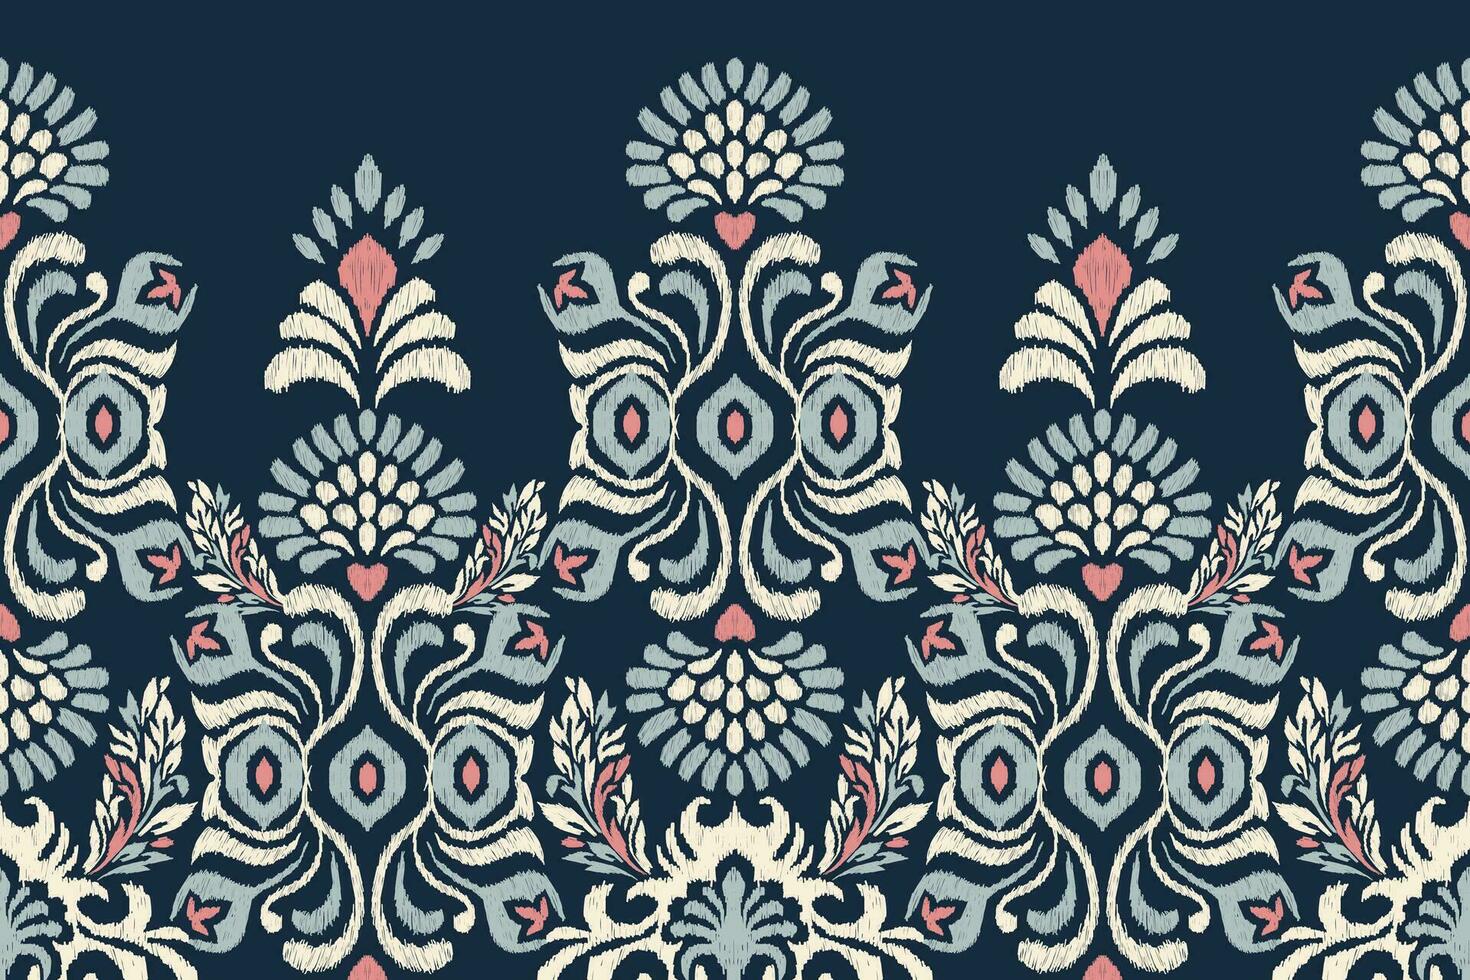 ikat bloemen paisley borduurwerk Aan marine blauw achtergrond.ikat etnisch oosters patroon traditioneel.azteken stijl abstract vector illustratie.ontwerp voor textuur, stof, kleding, verpakking, decoratie, sarong.